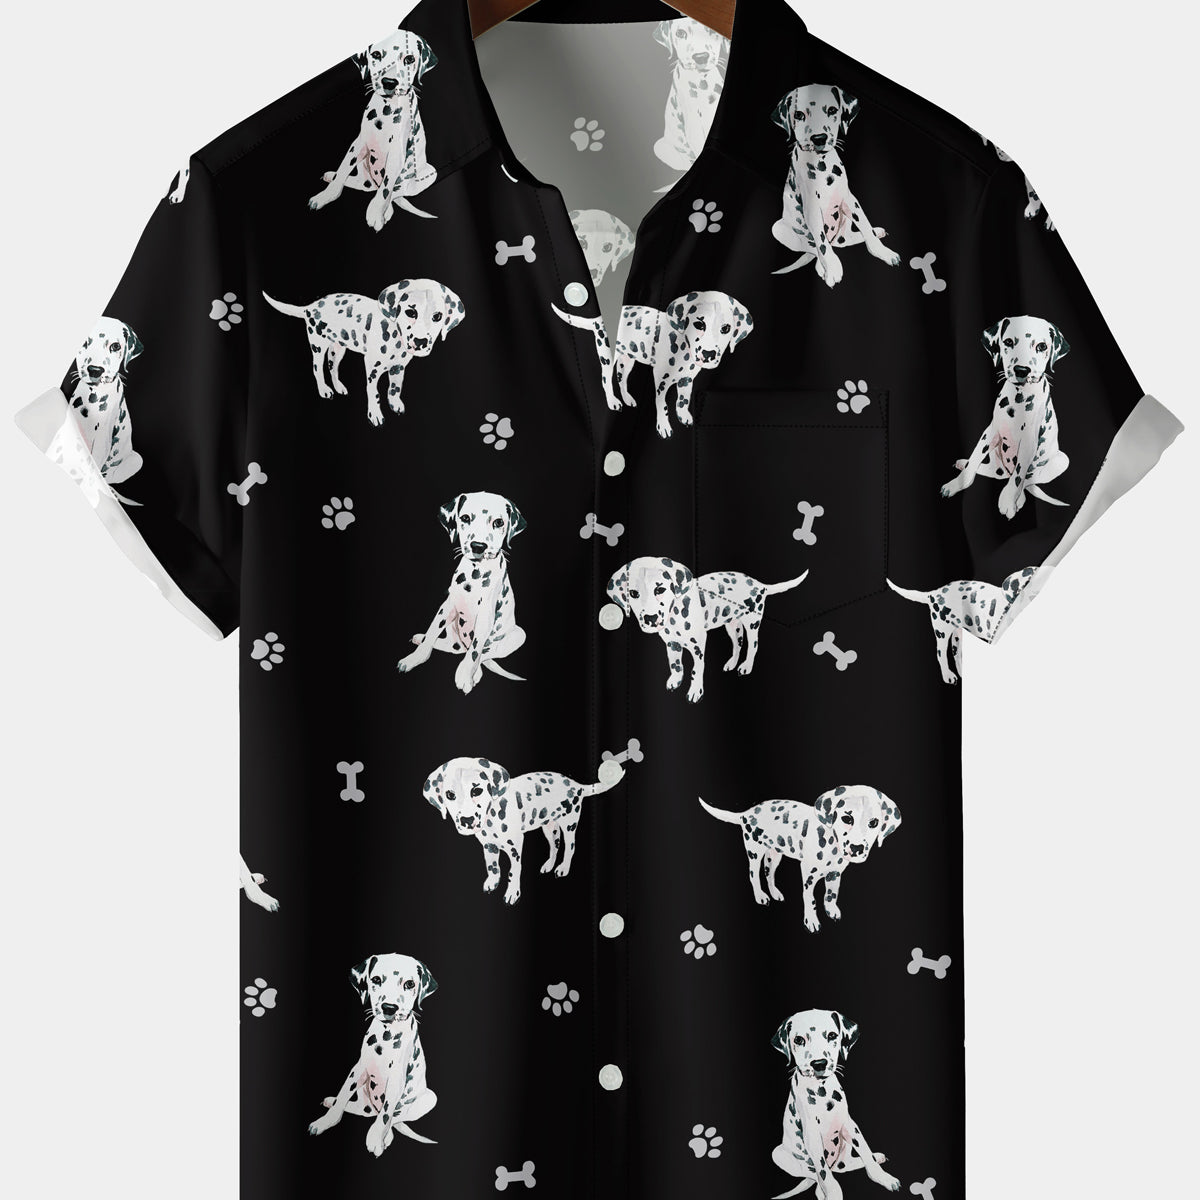 Men's Cute Dalmatians Print Short Sleeve Shirt